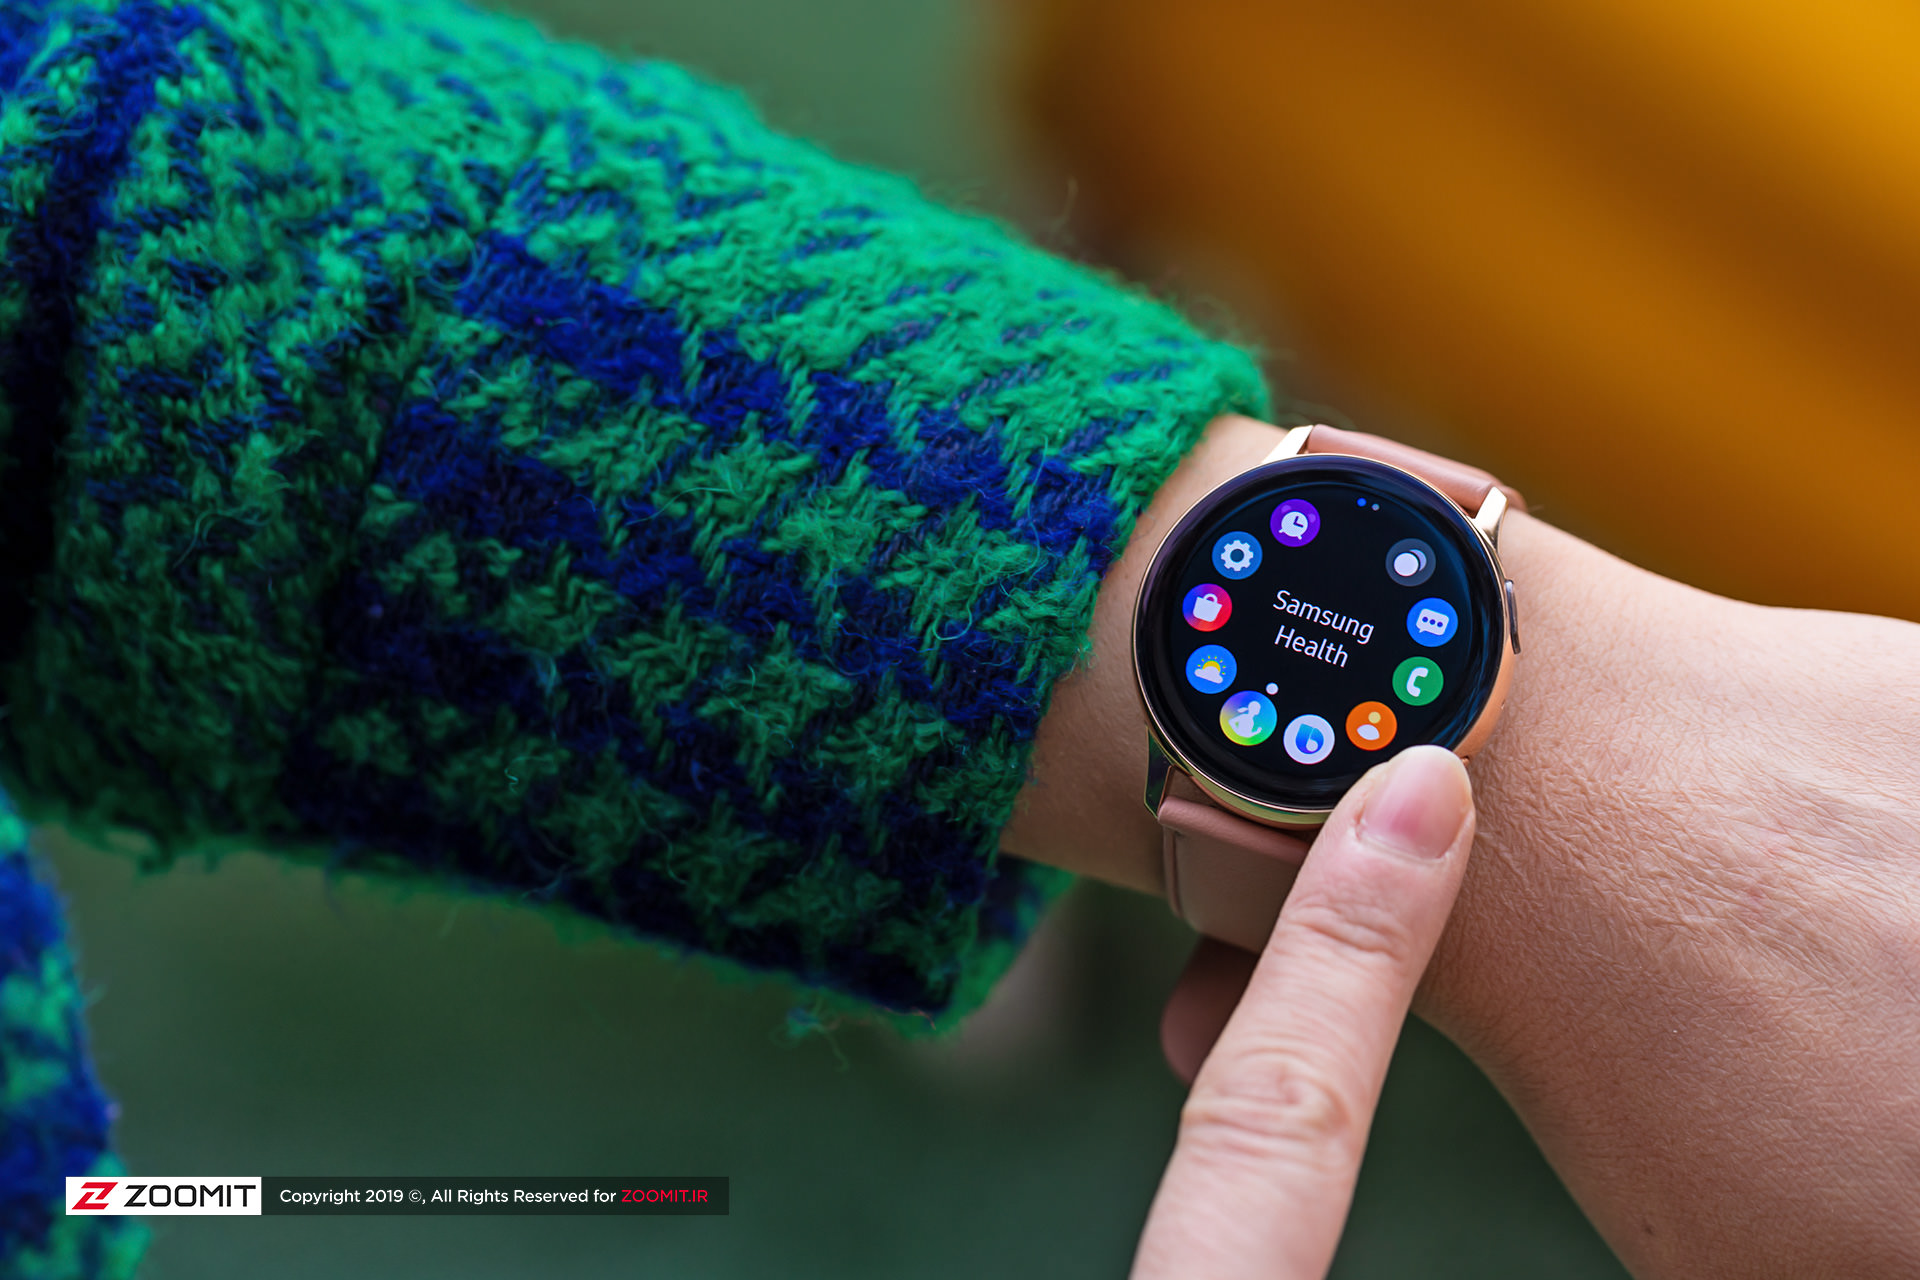 گلکسی واچ اکتیو ۲ سامسونگ / Samsung Galaxy Watch Active 2 در دست چپ با لباس سبز